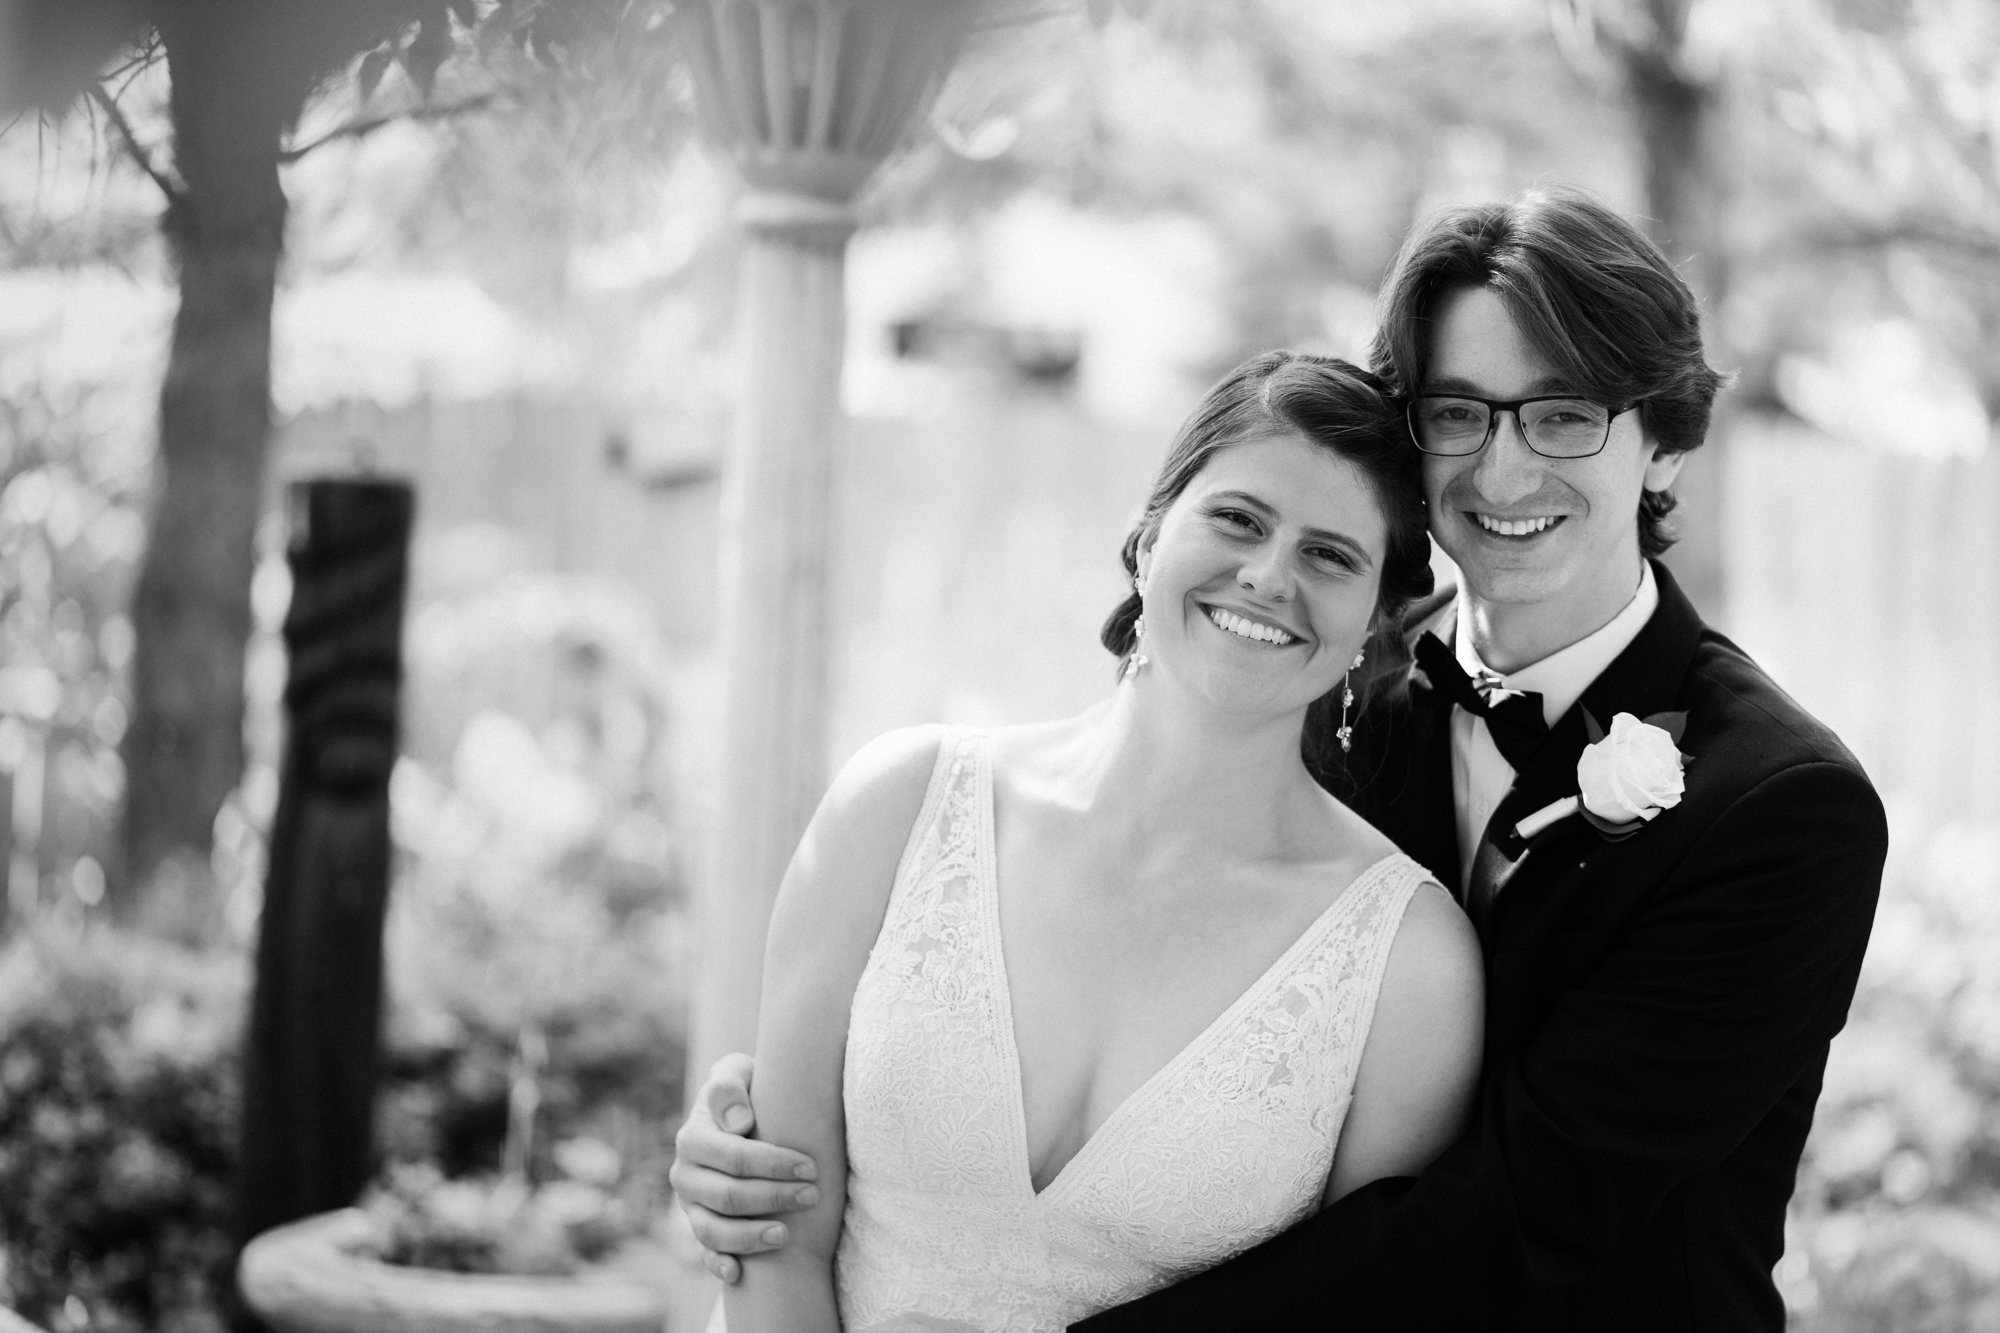 DanWalt Gardens Wedding Photos // Billings, MT Photographer // Sarah and David - 12